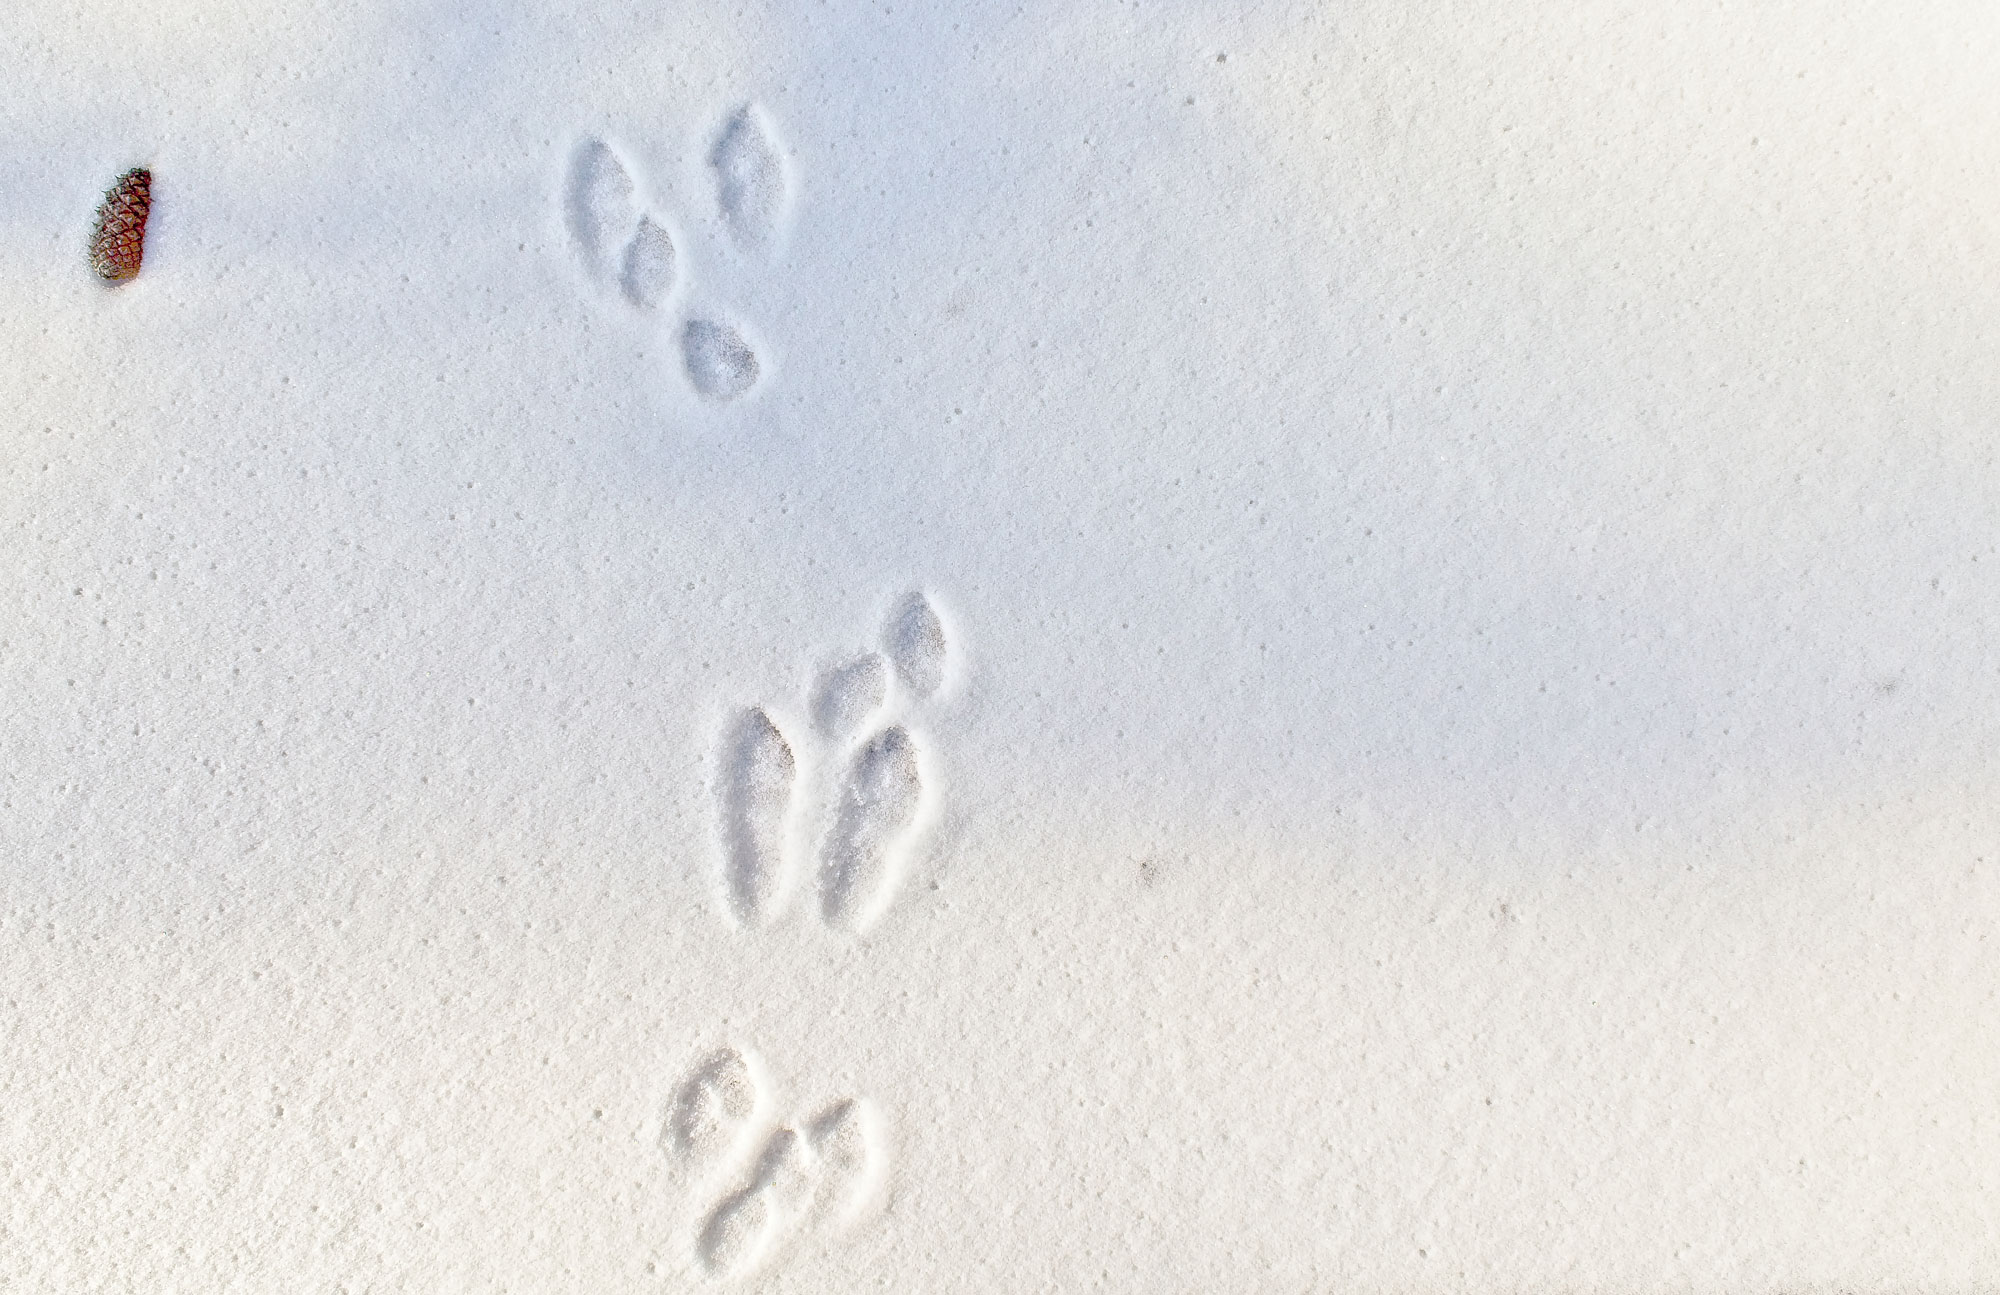 Rabbit tracks in snow.